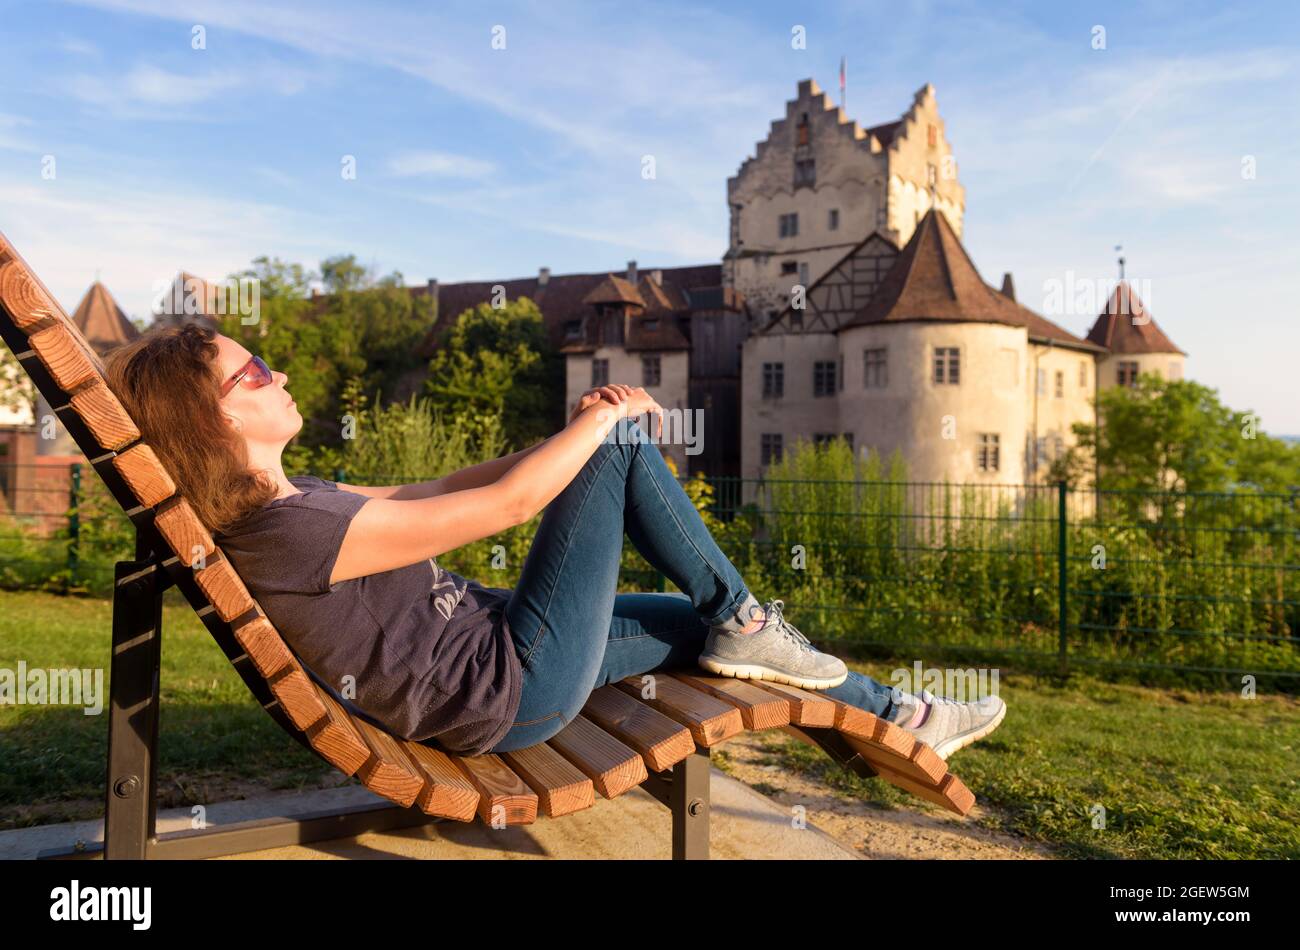 Junge Frau ruht auf Schloss Meersburg, Deutschland. Dieser Ort ist Touristenattraktion des Bodensees. Erwachsene Mädchen sonnenbaden in der Nähe schwäbischen Wahrzeichen bei Sonnen Stockfoto